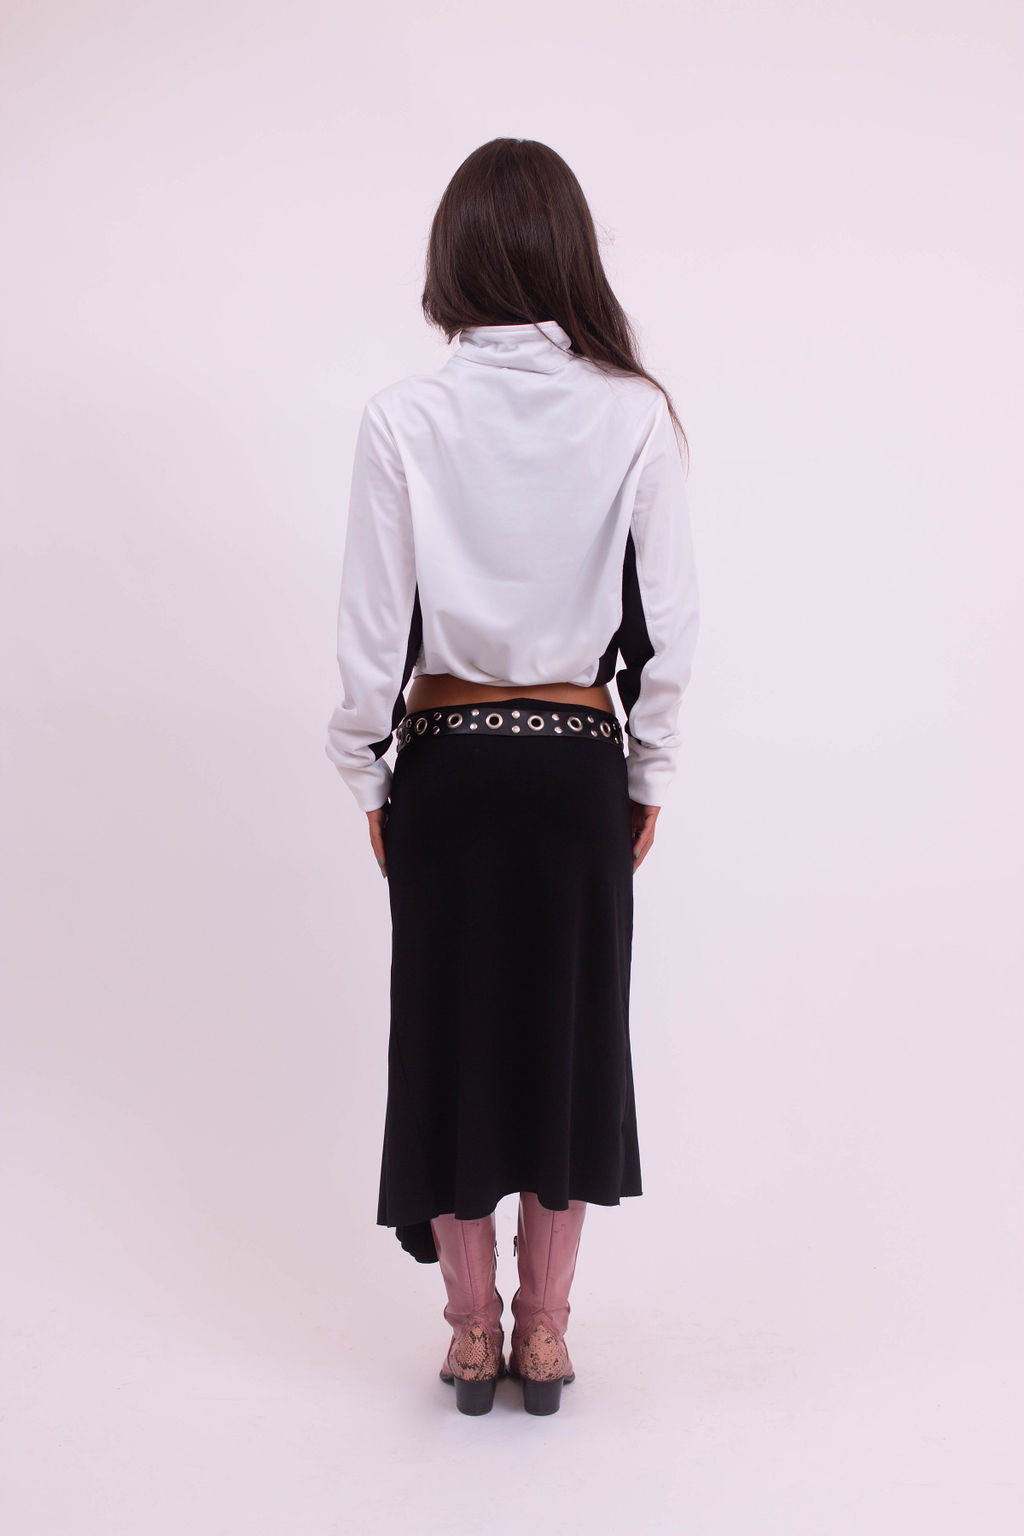 Asymmetrical black skirt